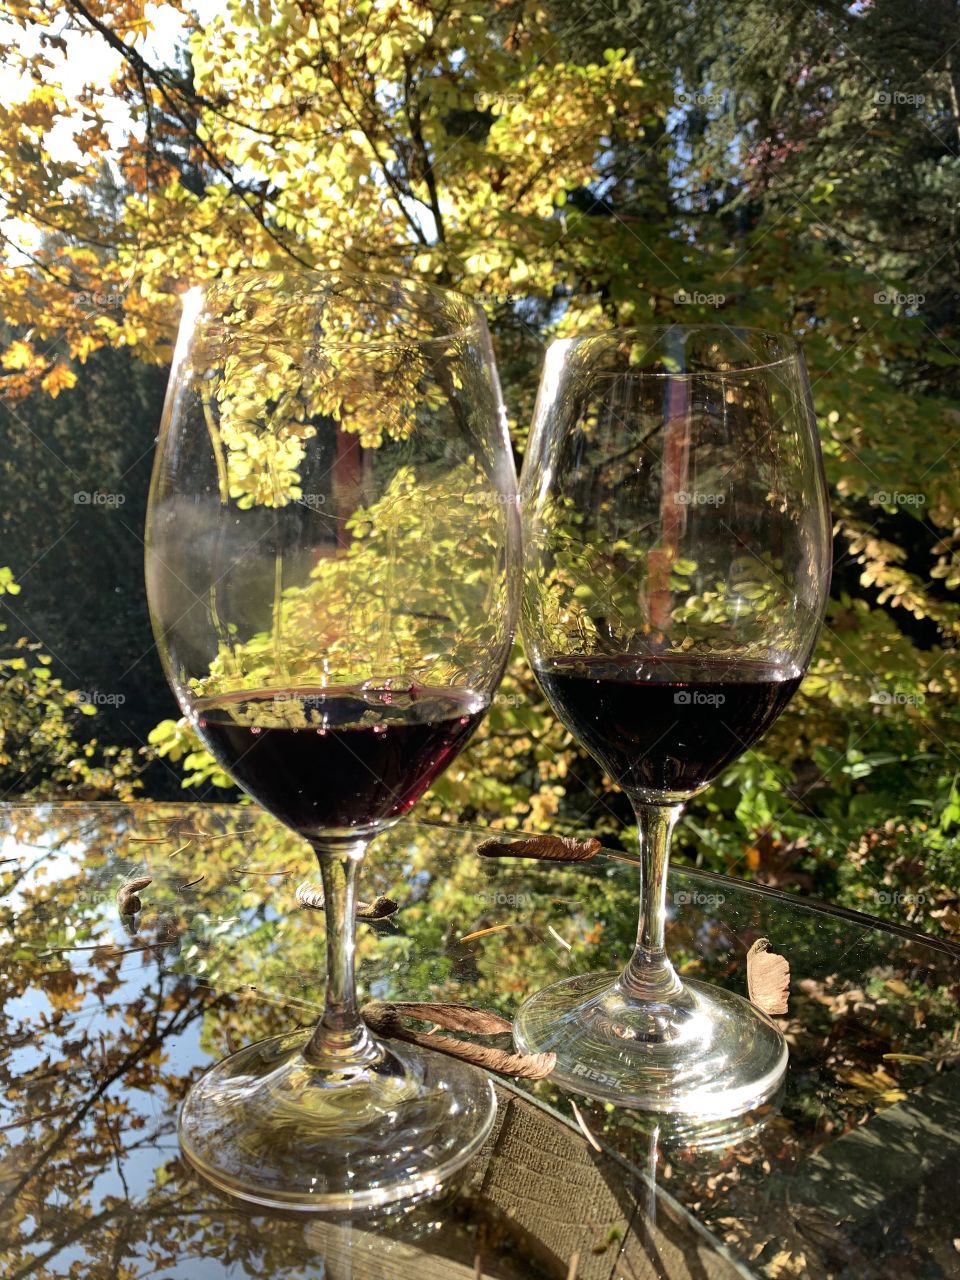 Fall winery 